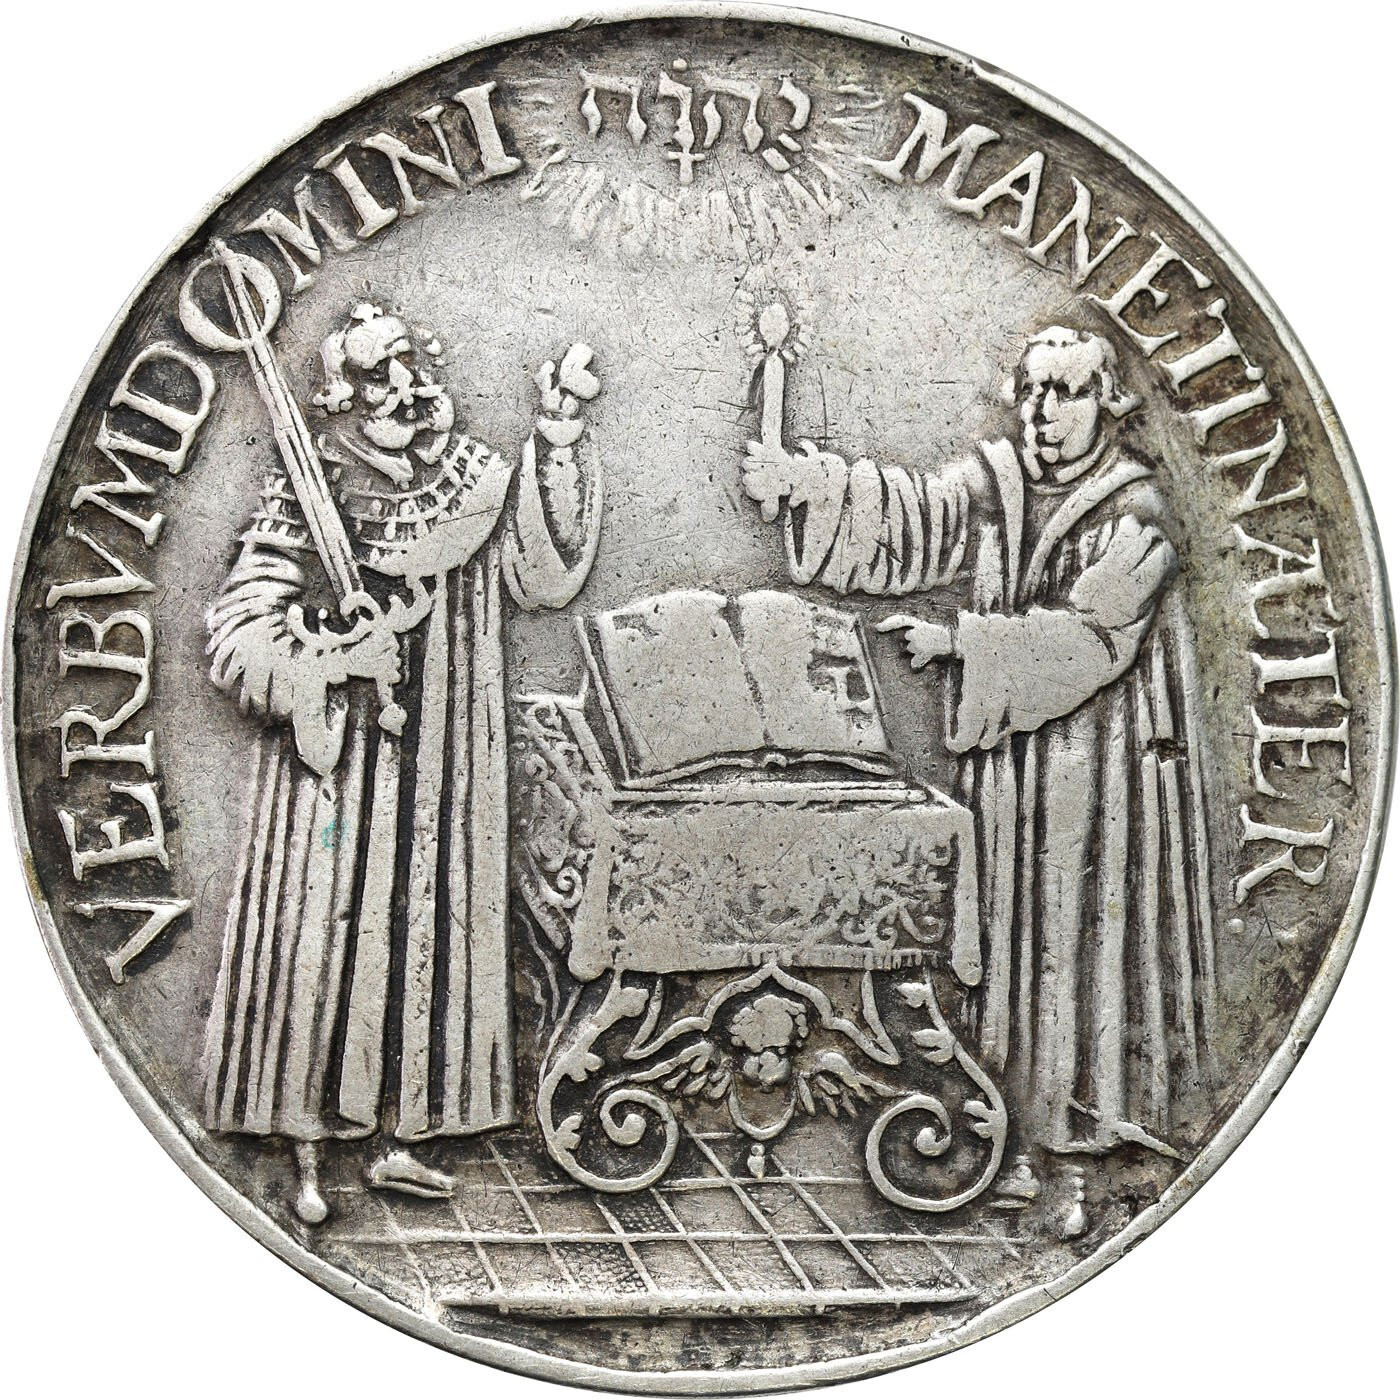 Niemcy, Saksonia. Medal na Stulecie Reformacji 1617